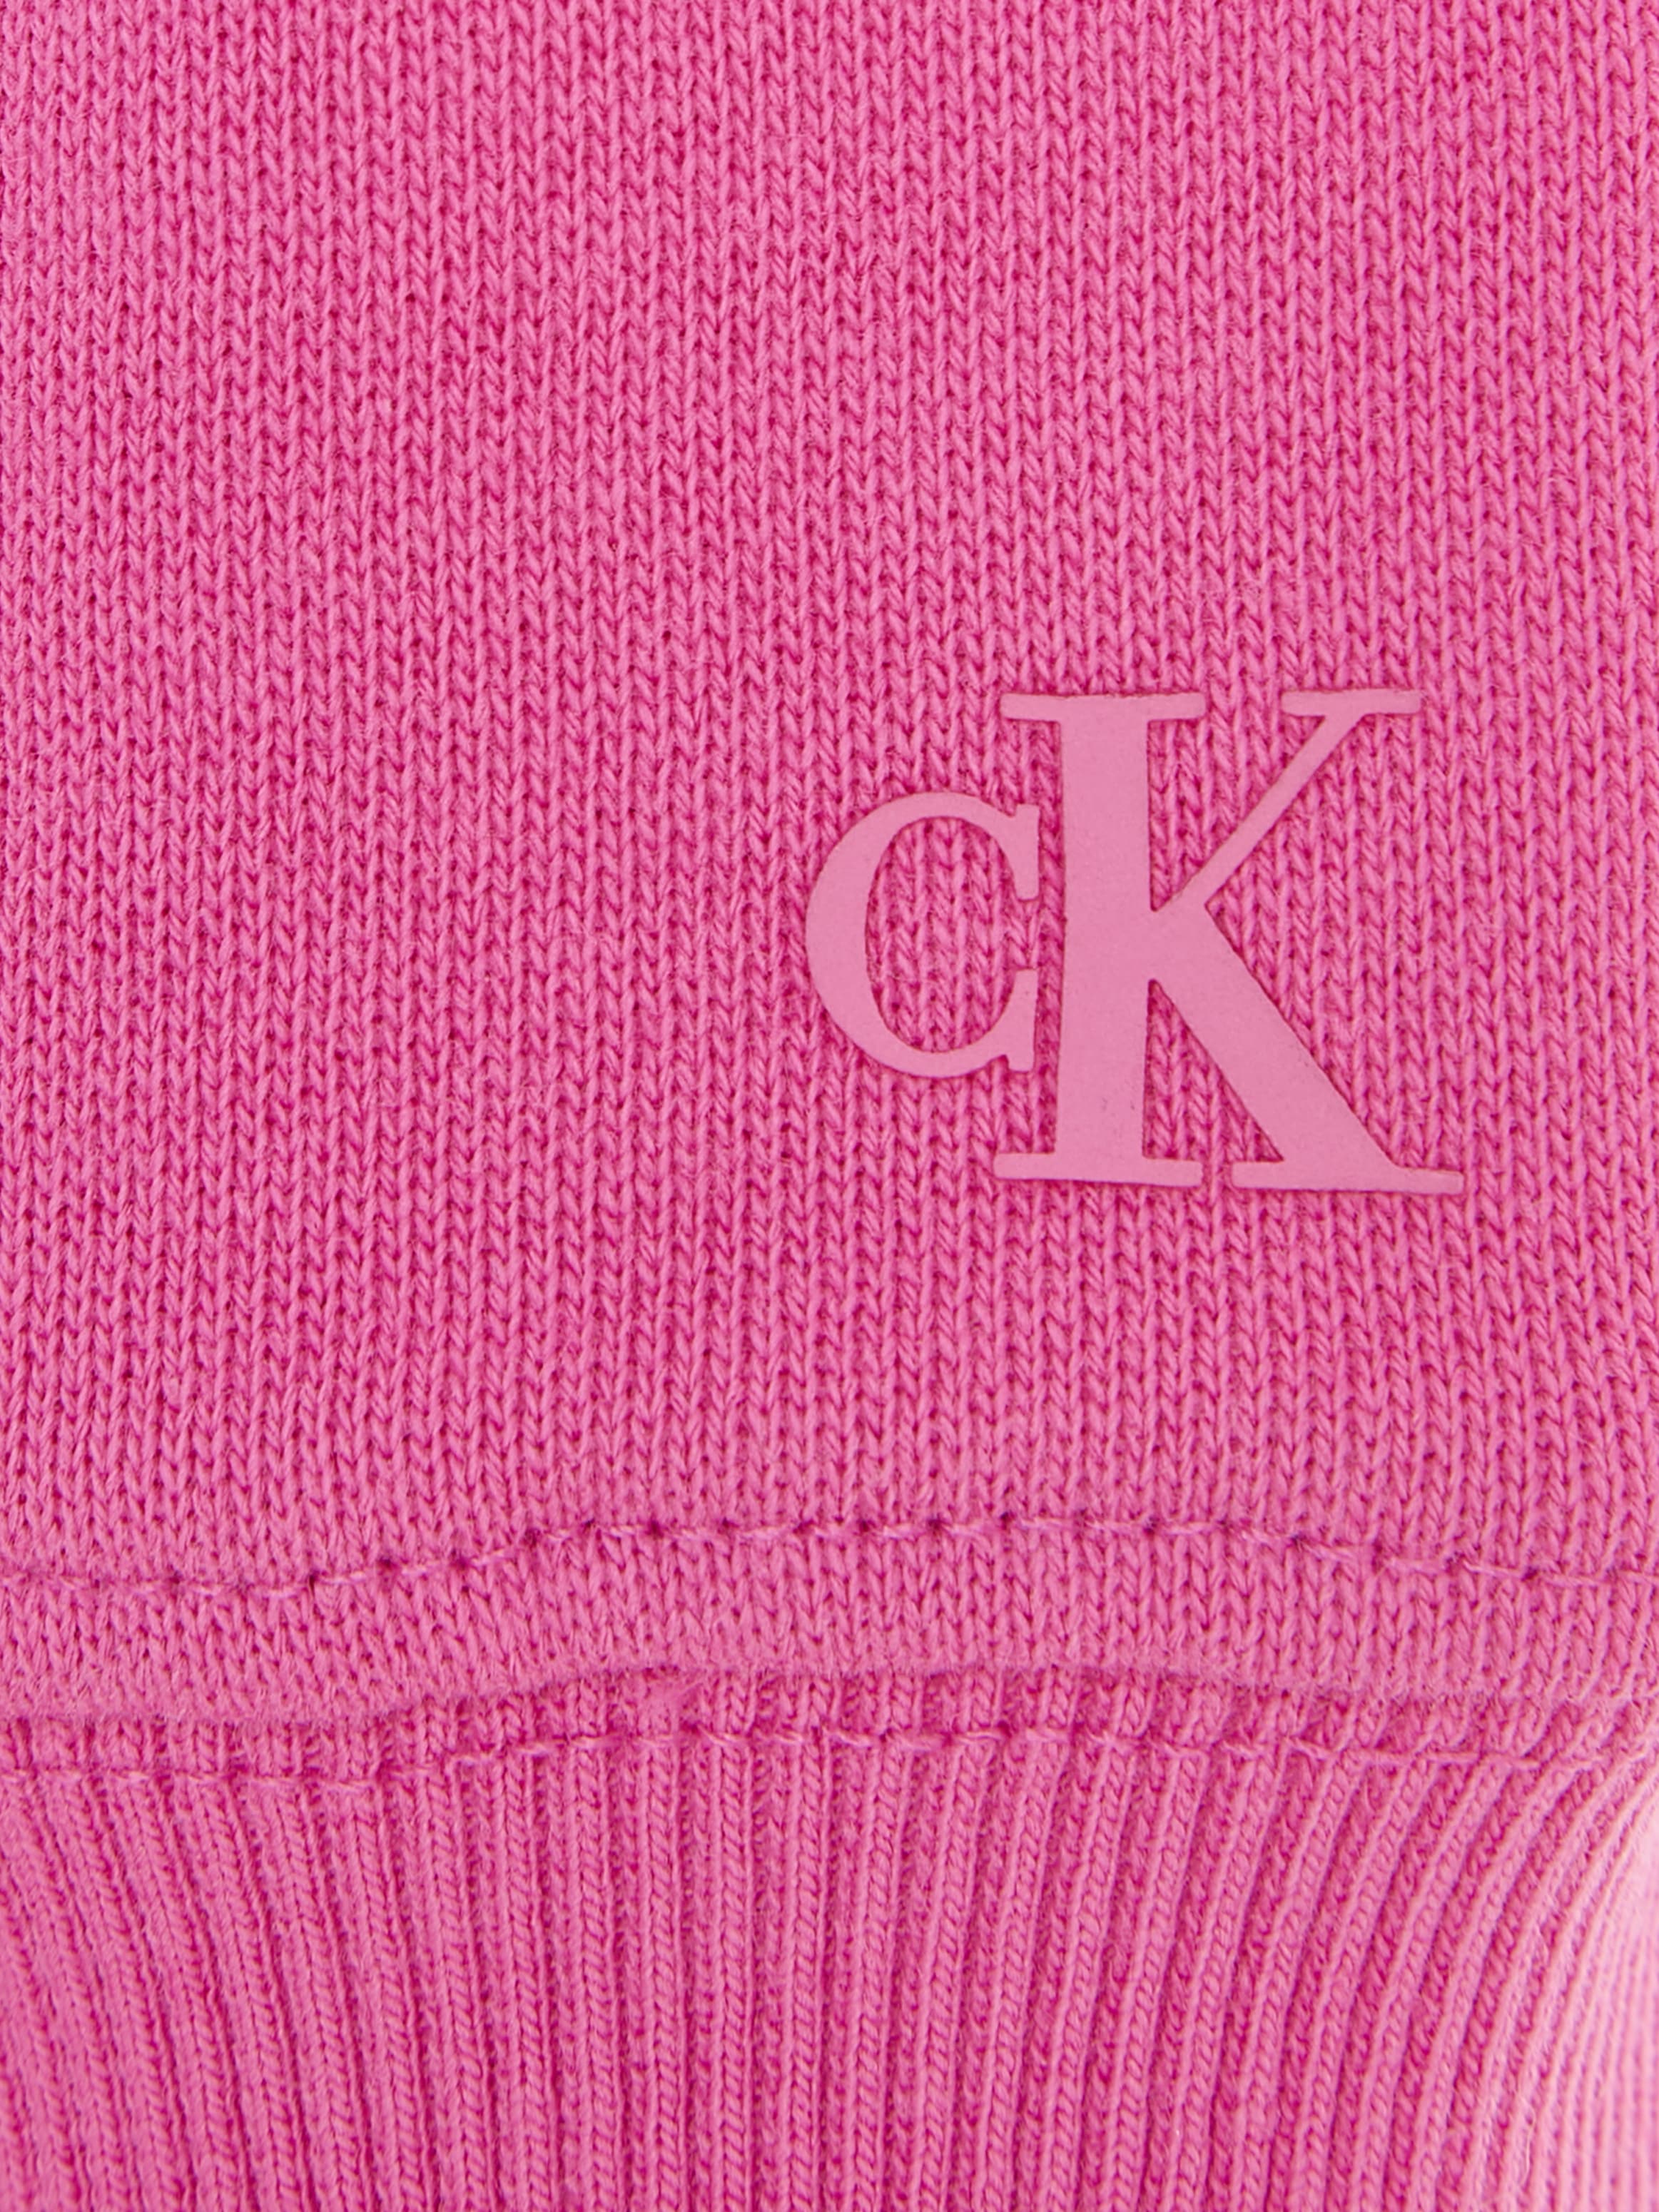 Calvin Klein Jeans Sweatkleid »PUFF HERO LOGO LS HOODIE DRESS«, für Kinder bis 16 Jahre